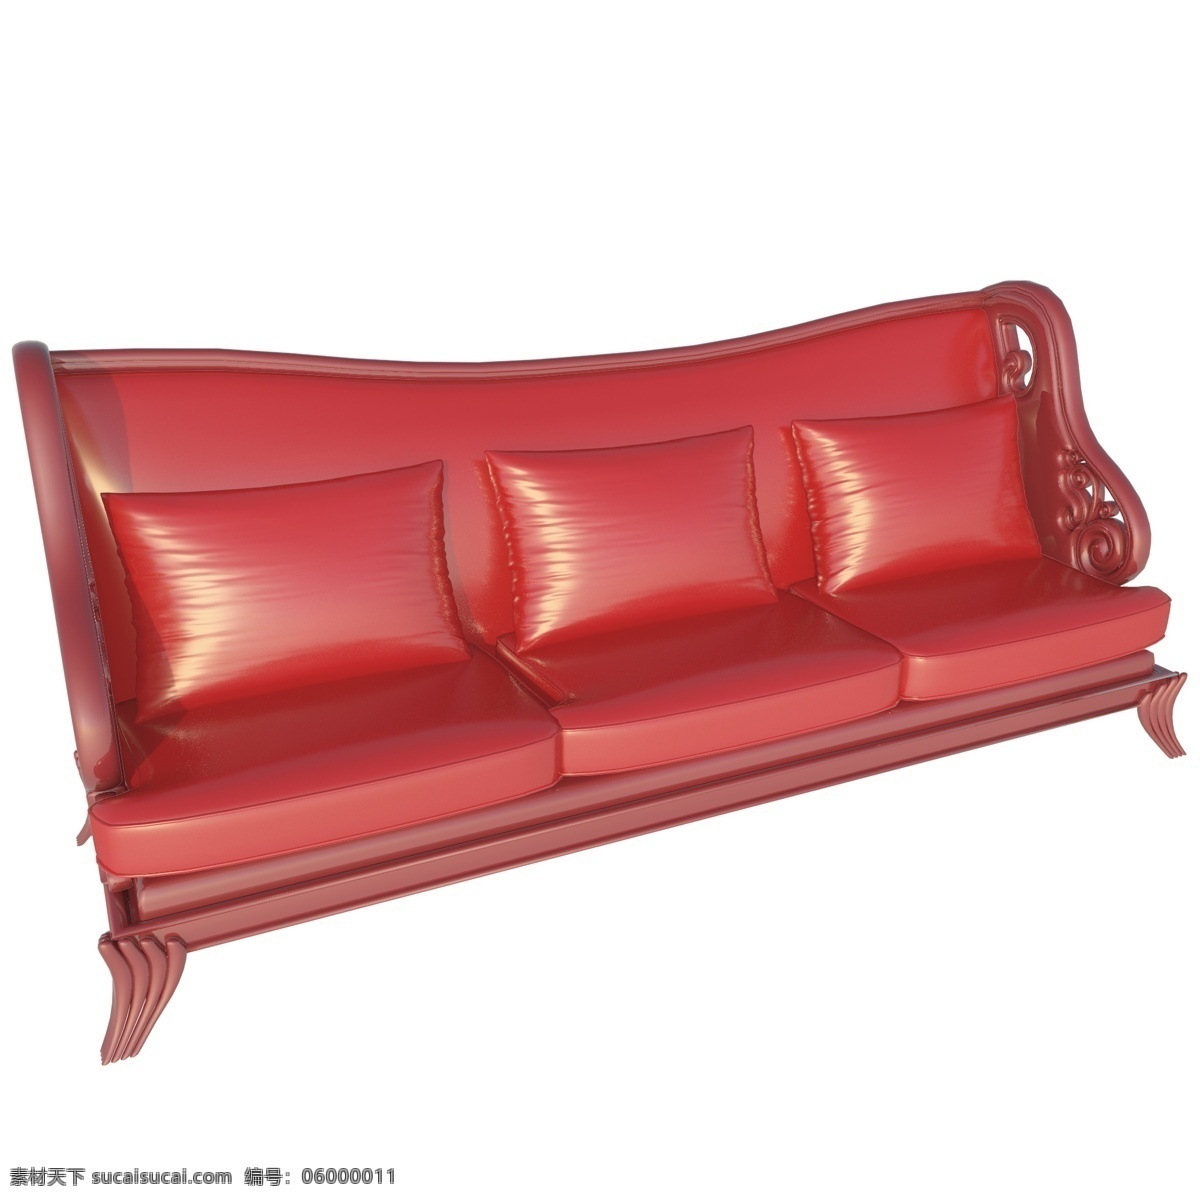 大红色 创意 沙发 装饰 三座沙发 立体装饰 红色 沙发椅